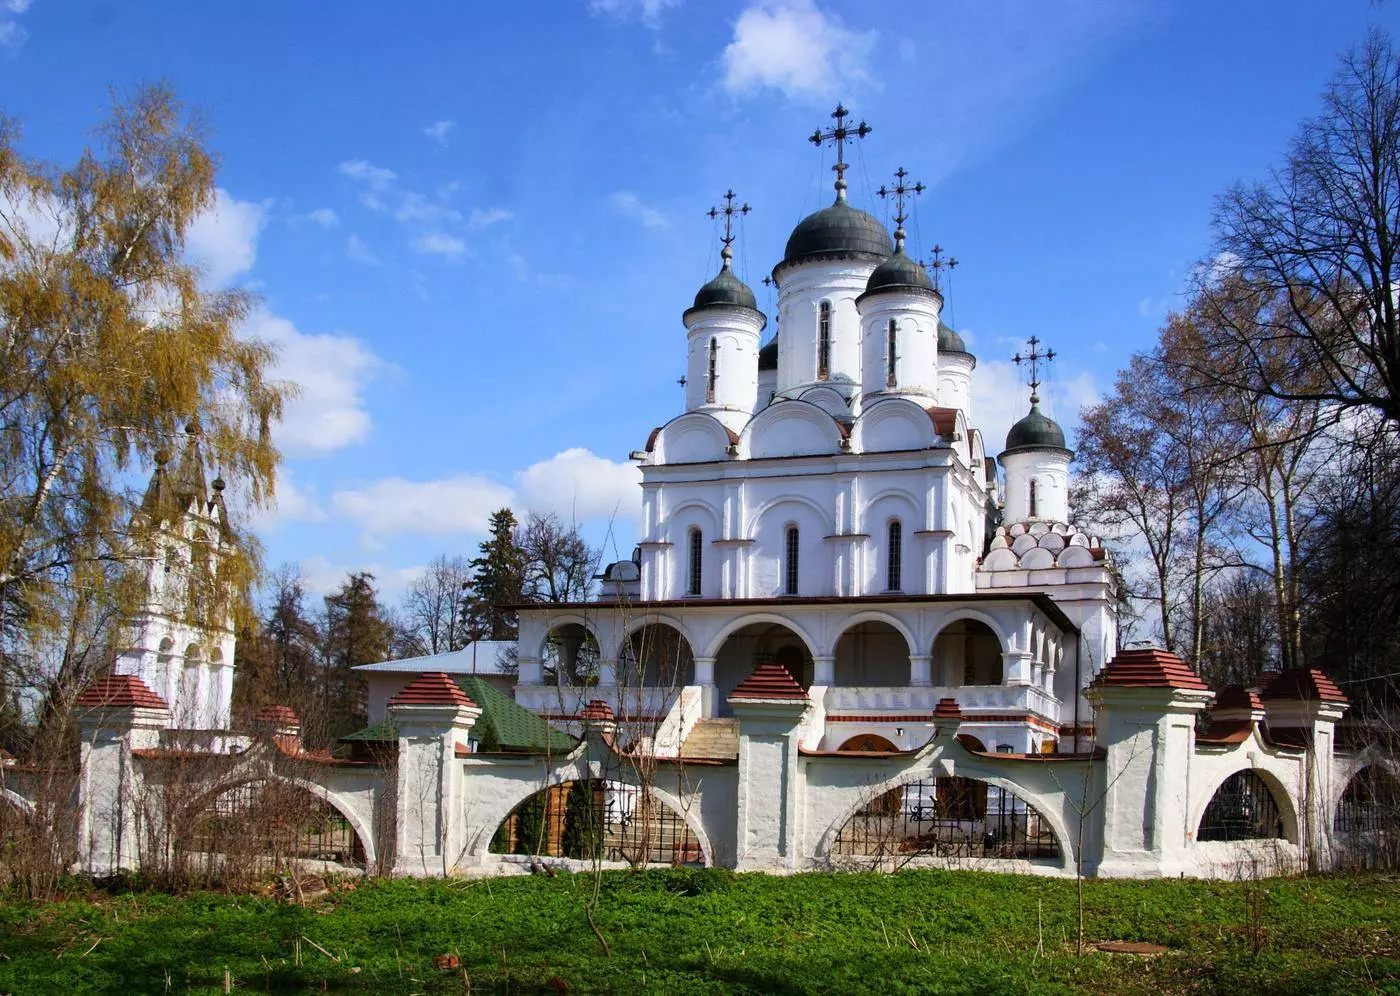 Достопримечательности зарайска: кремль и старинные храмы